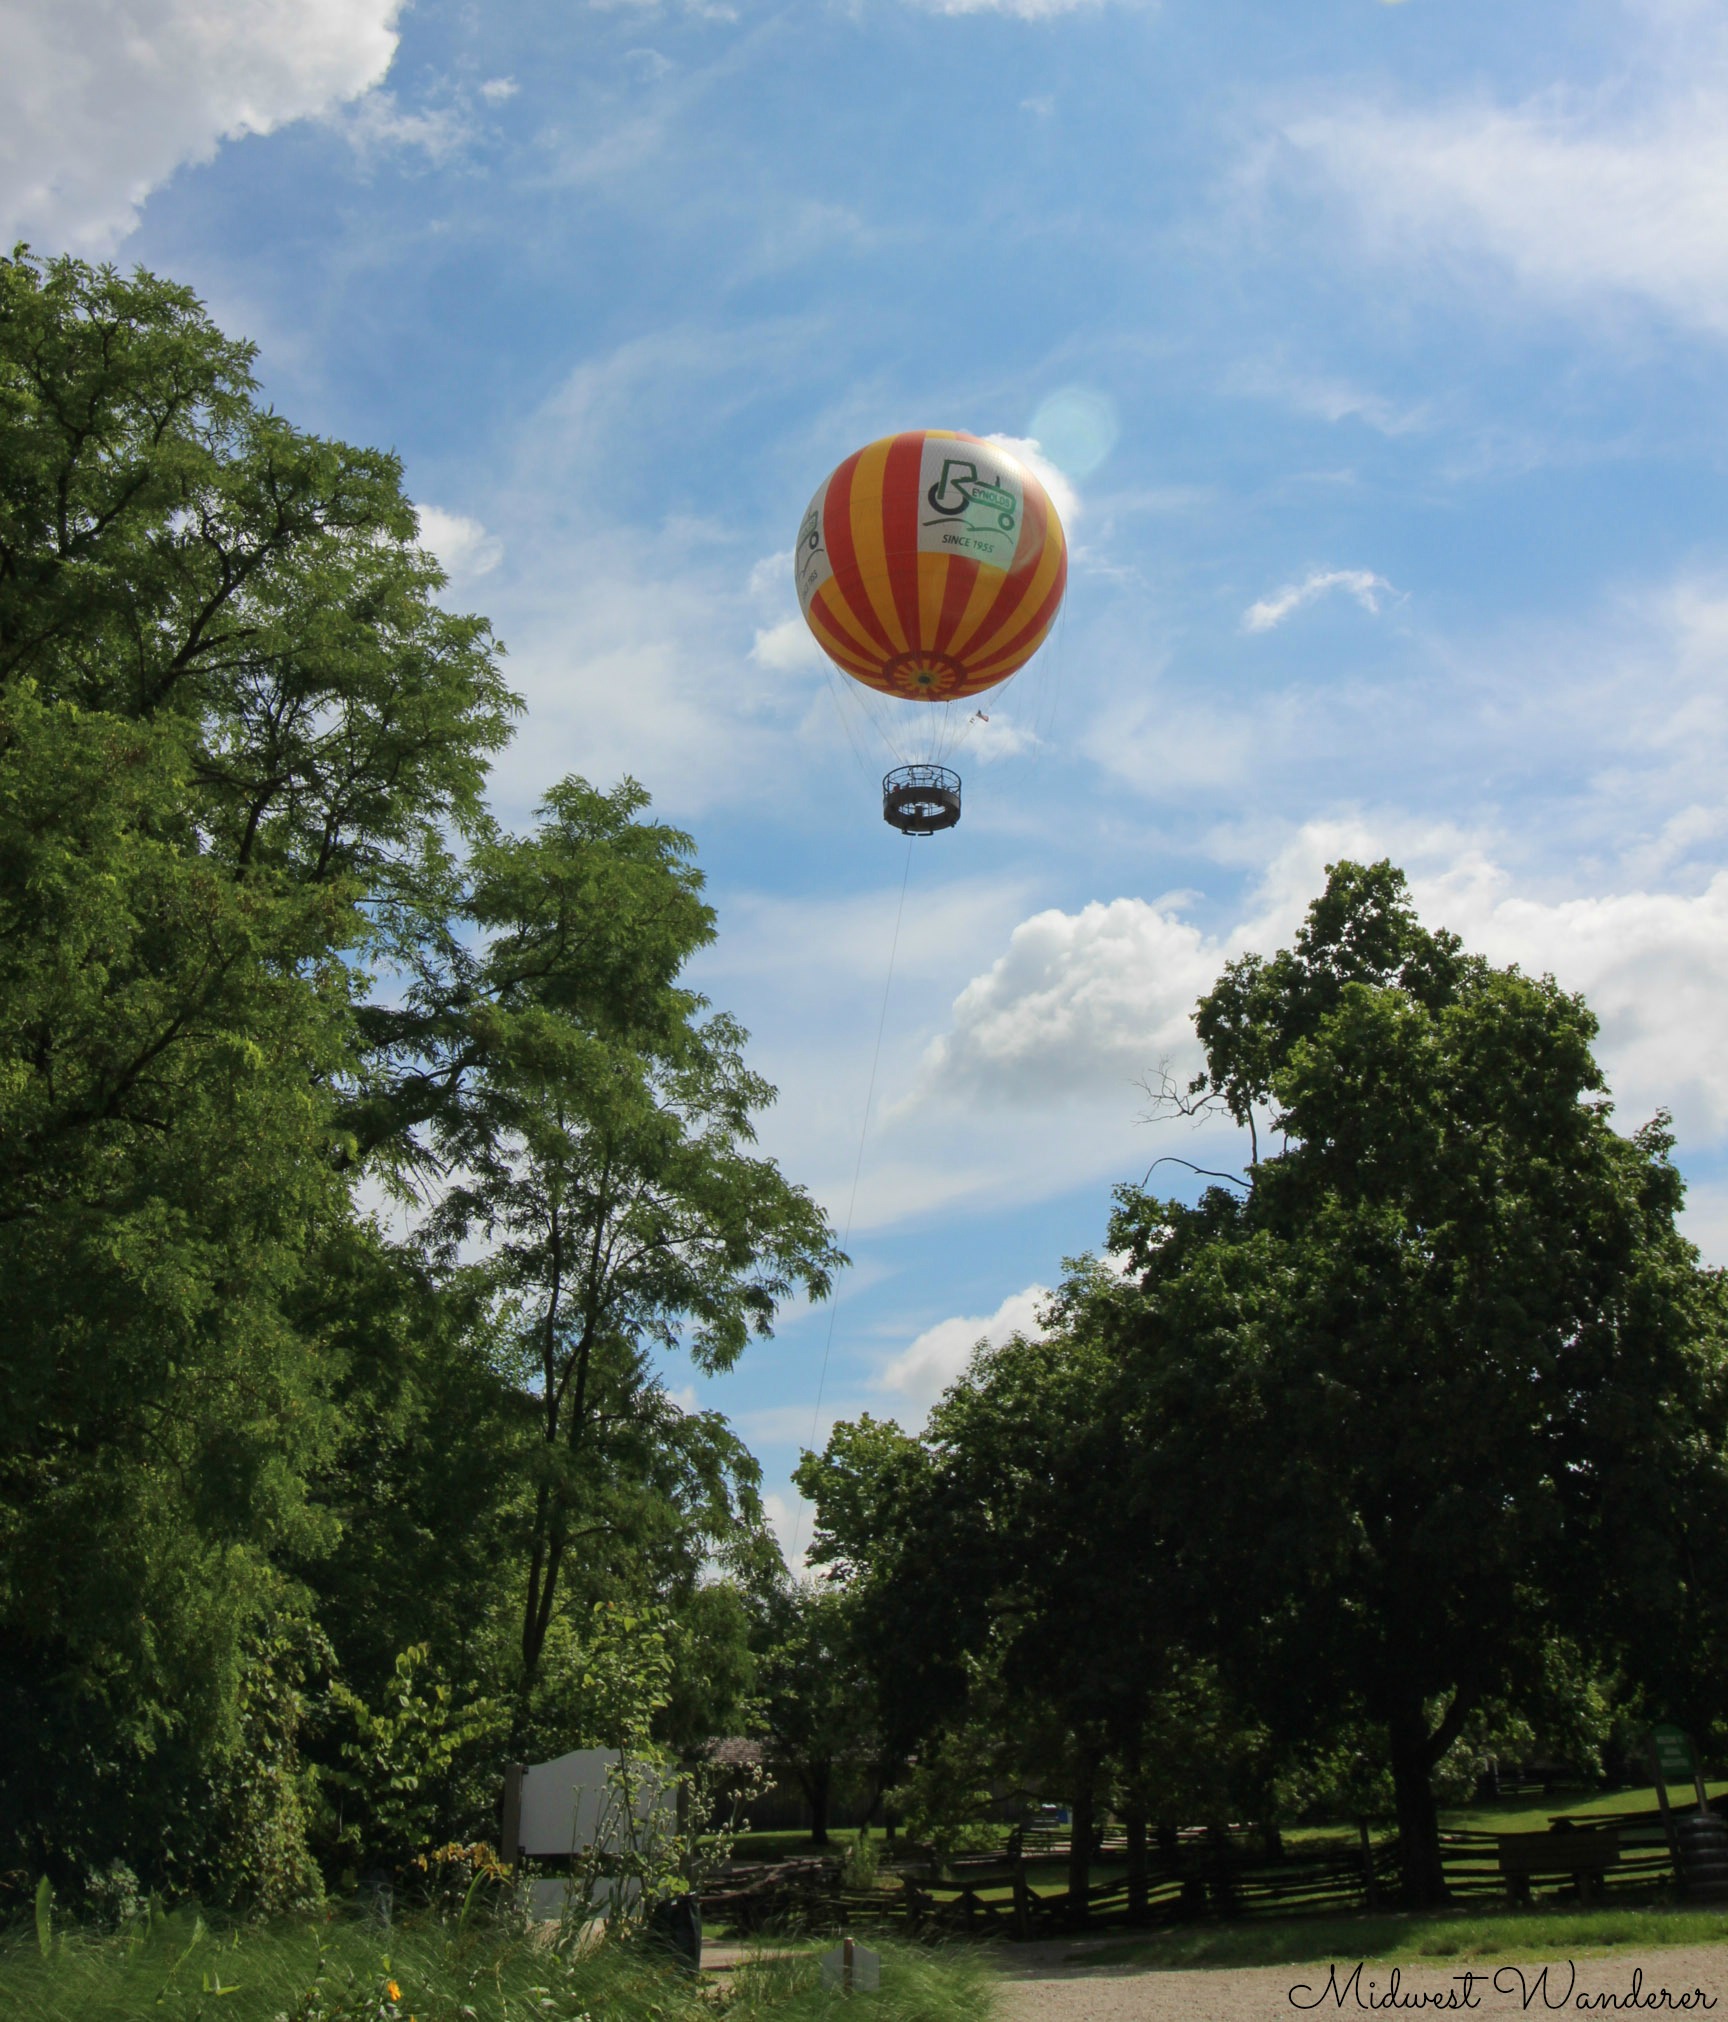 1859 Balloon Adventure - 1